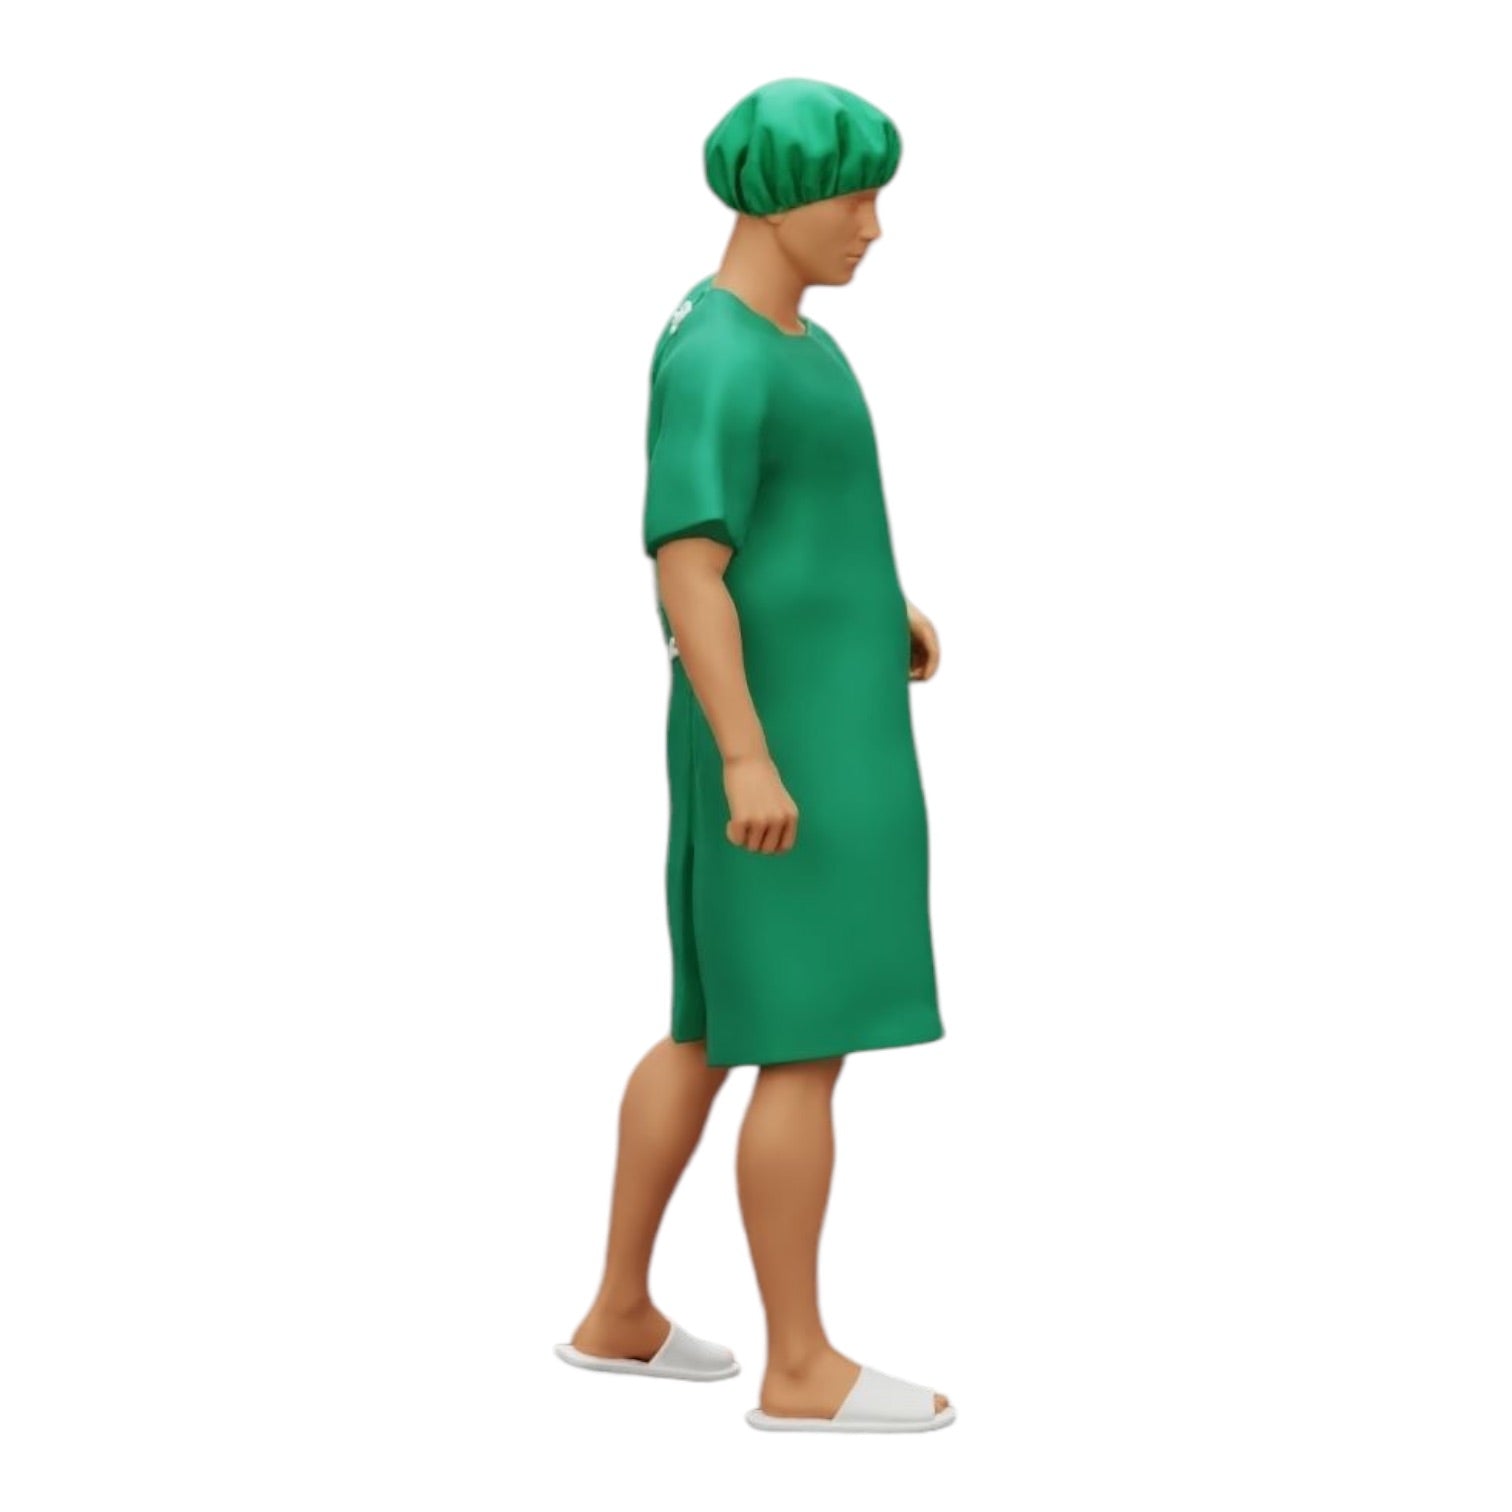 Diorama Modellbau Produktfoto 0: Patient im Krankenhaus bewegt sich fort (Ref Nr. A27)